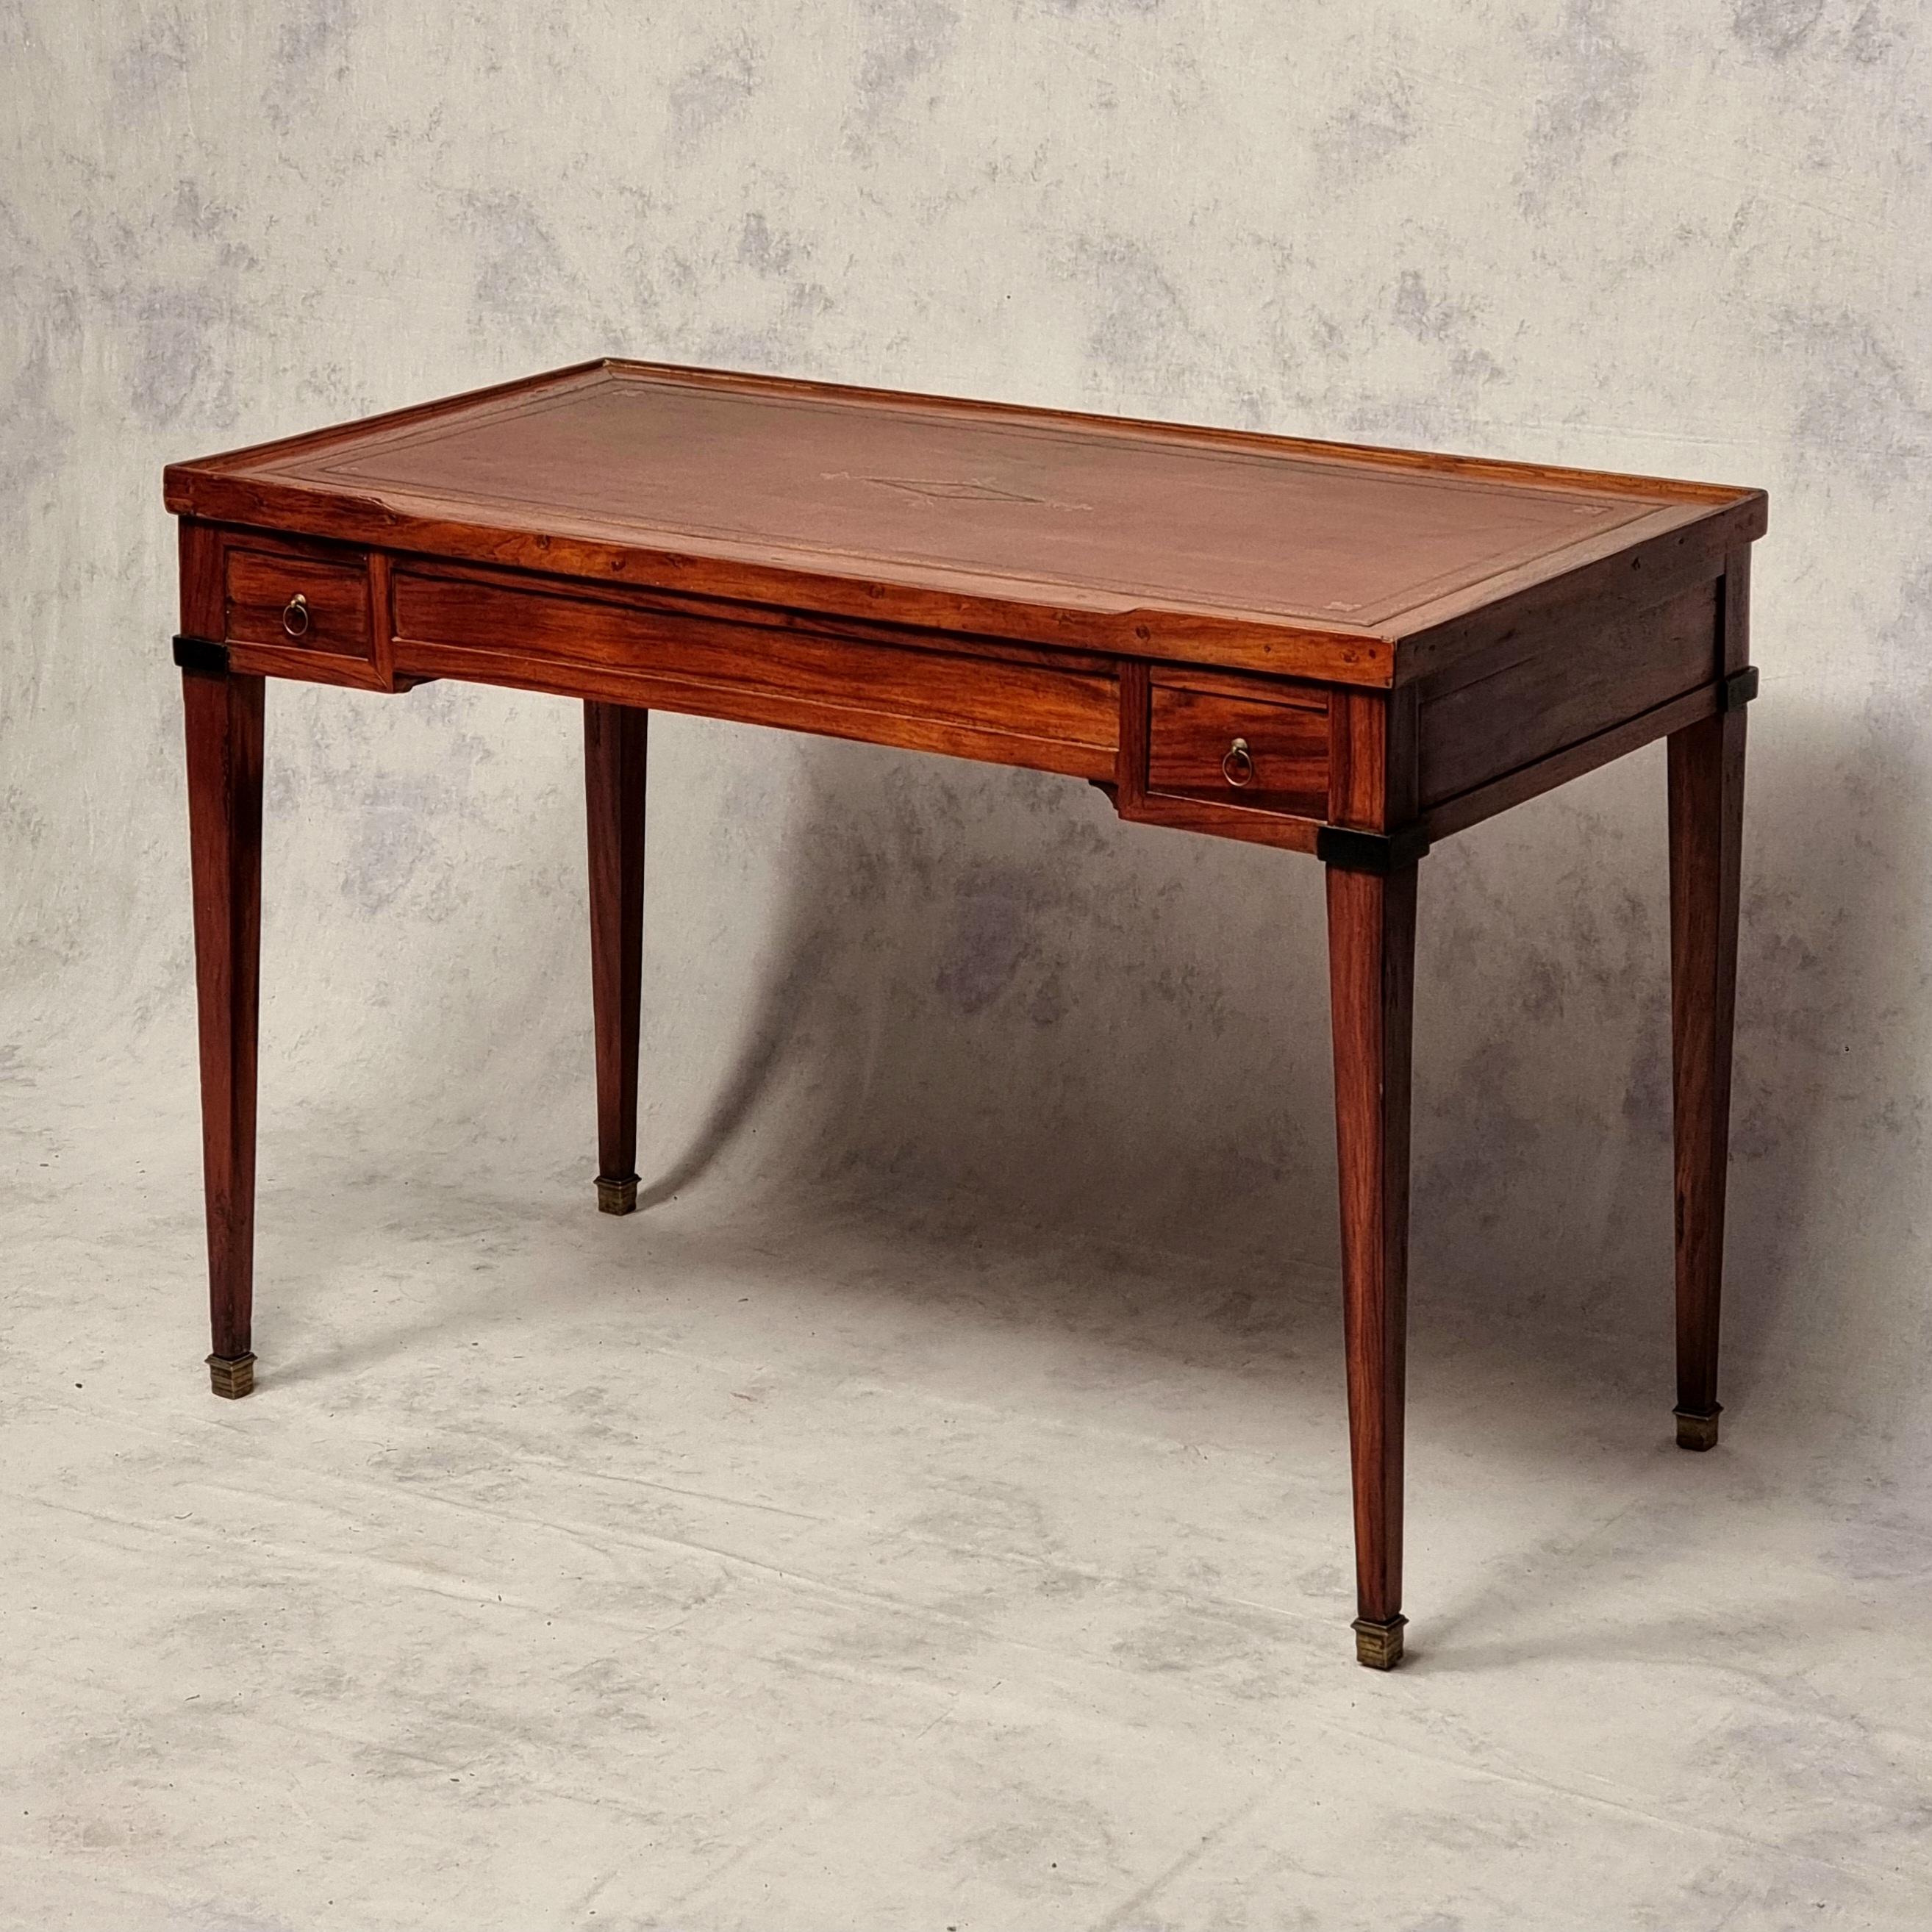 Prächtiger Spieltisch namens tric-trac aus der Zeit des Directoire. Dieser rechteckige Tisch besteht aus Palisander- und Ebenholzfurnier, das auf einer Tannenstruktur montiert ist. Die Maserung des Holzes ist wunderschön. Er hat eine abnehmbare und